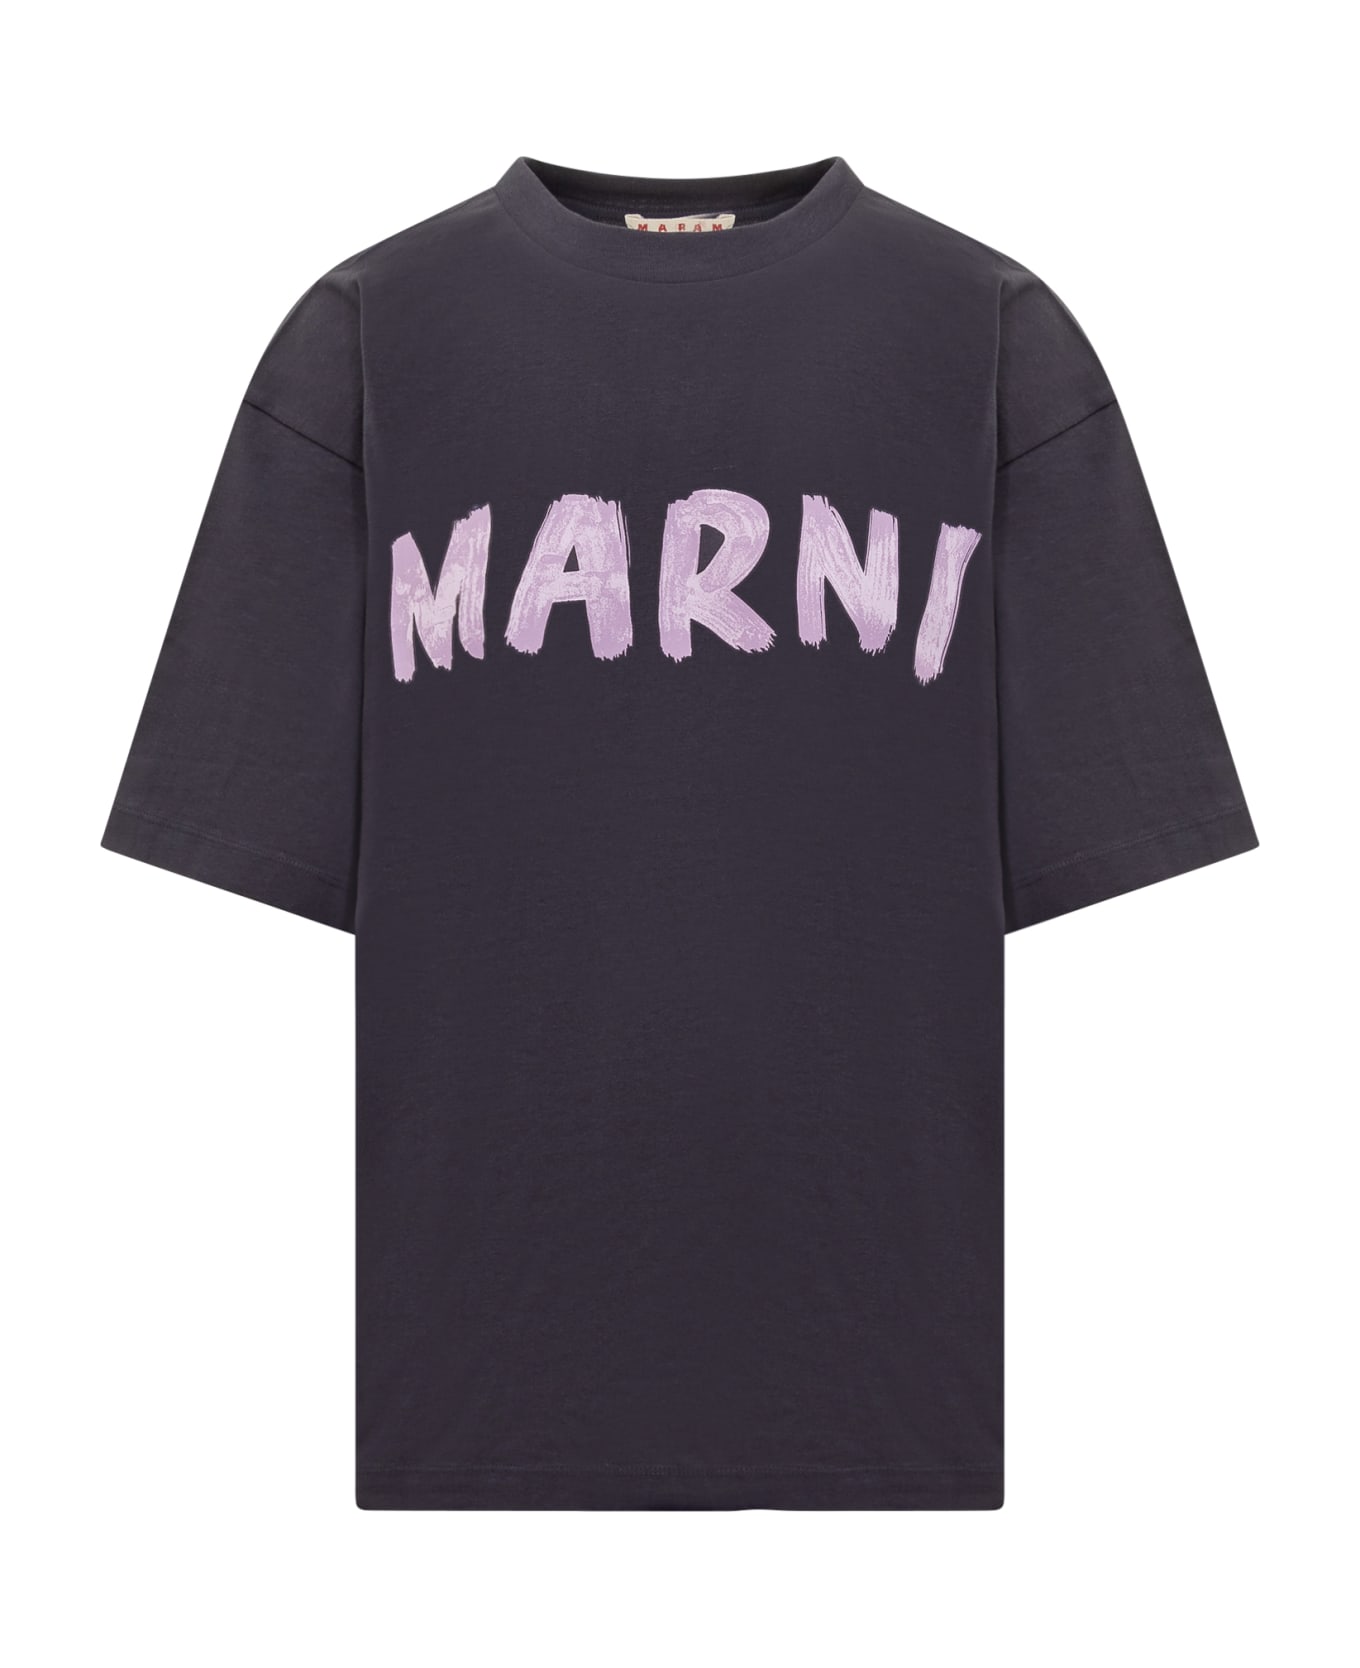 Marni T-shirt - BLU BLACK Tシャツ